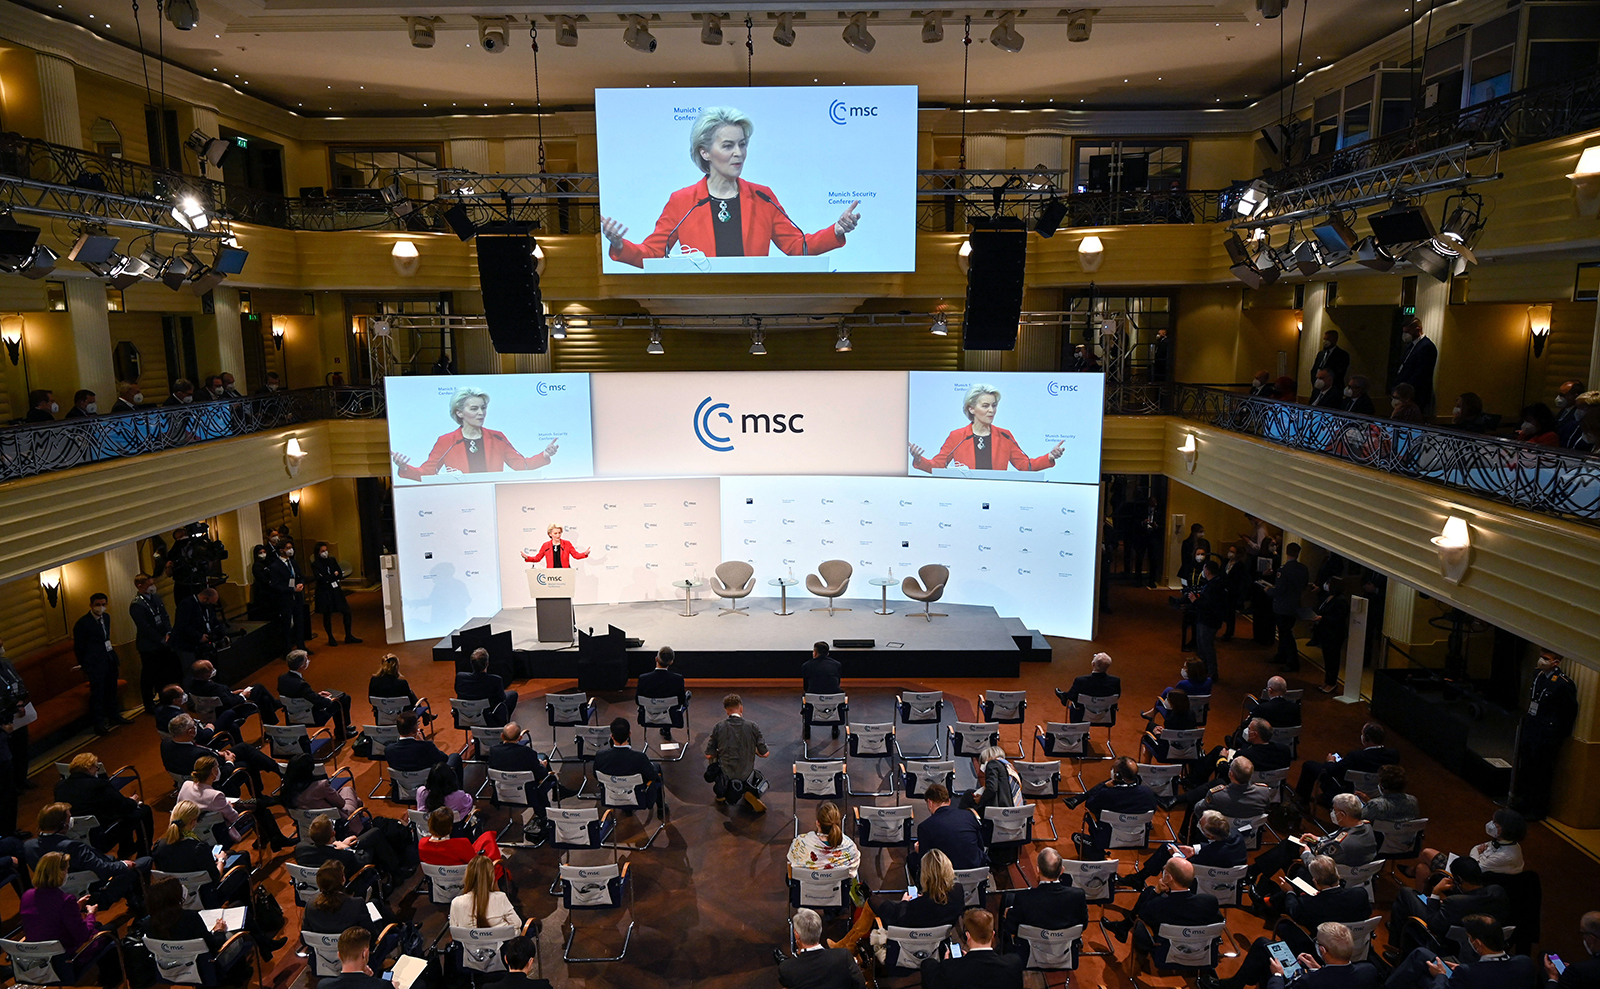 A presidente da Comissão Europeia, Ursula von der Leyen, fala na Conferência de Segurança de Munique, na Alemanha, em 19 de fevereiro.